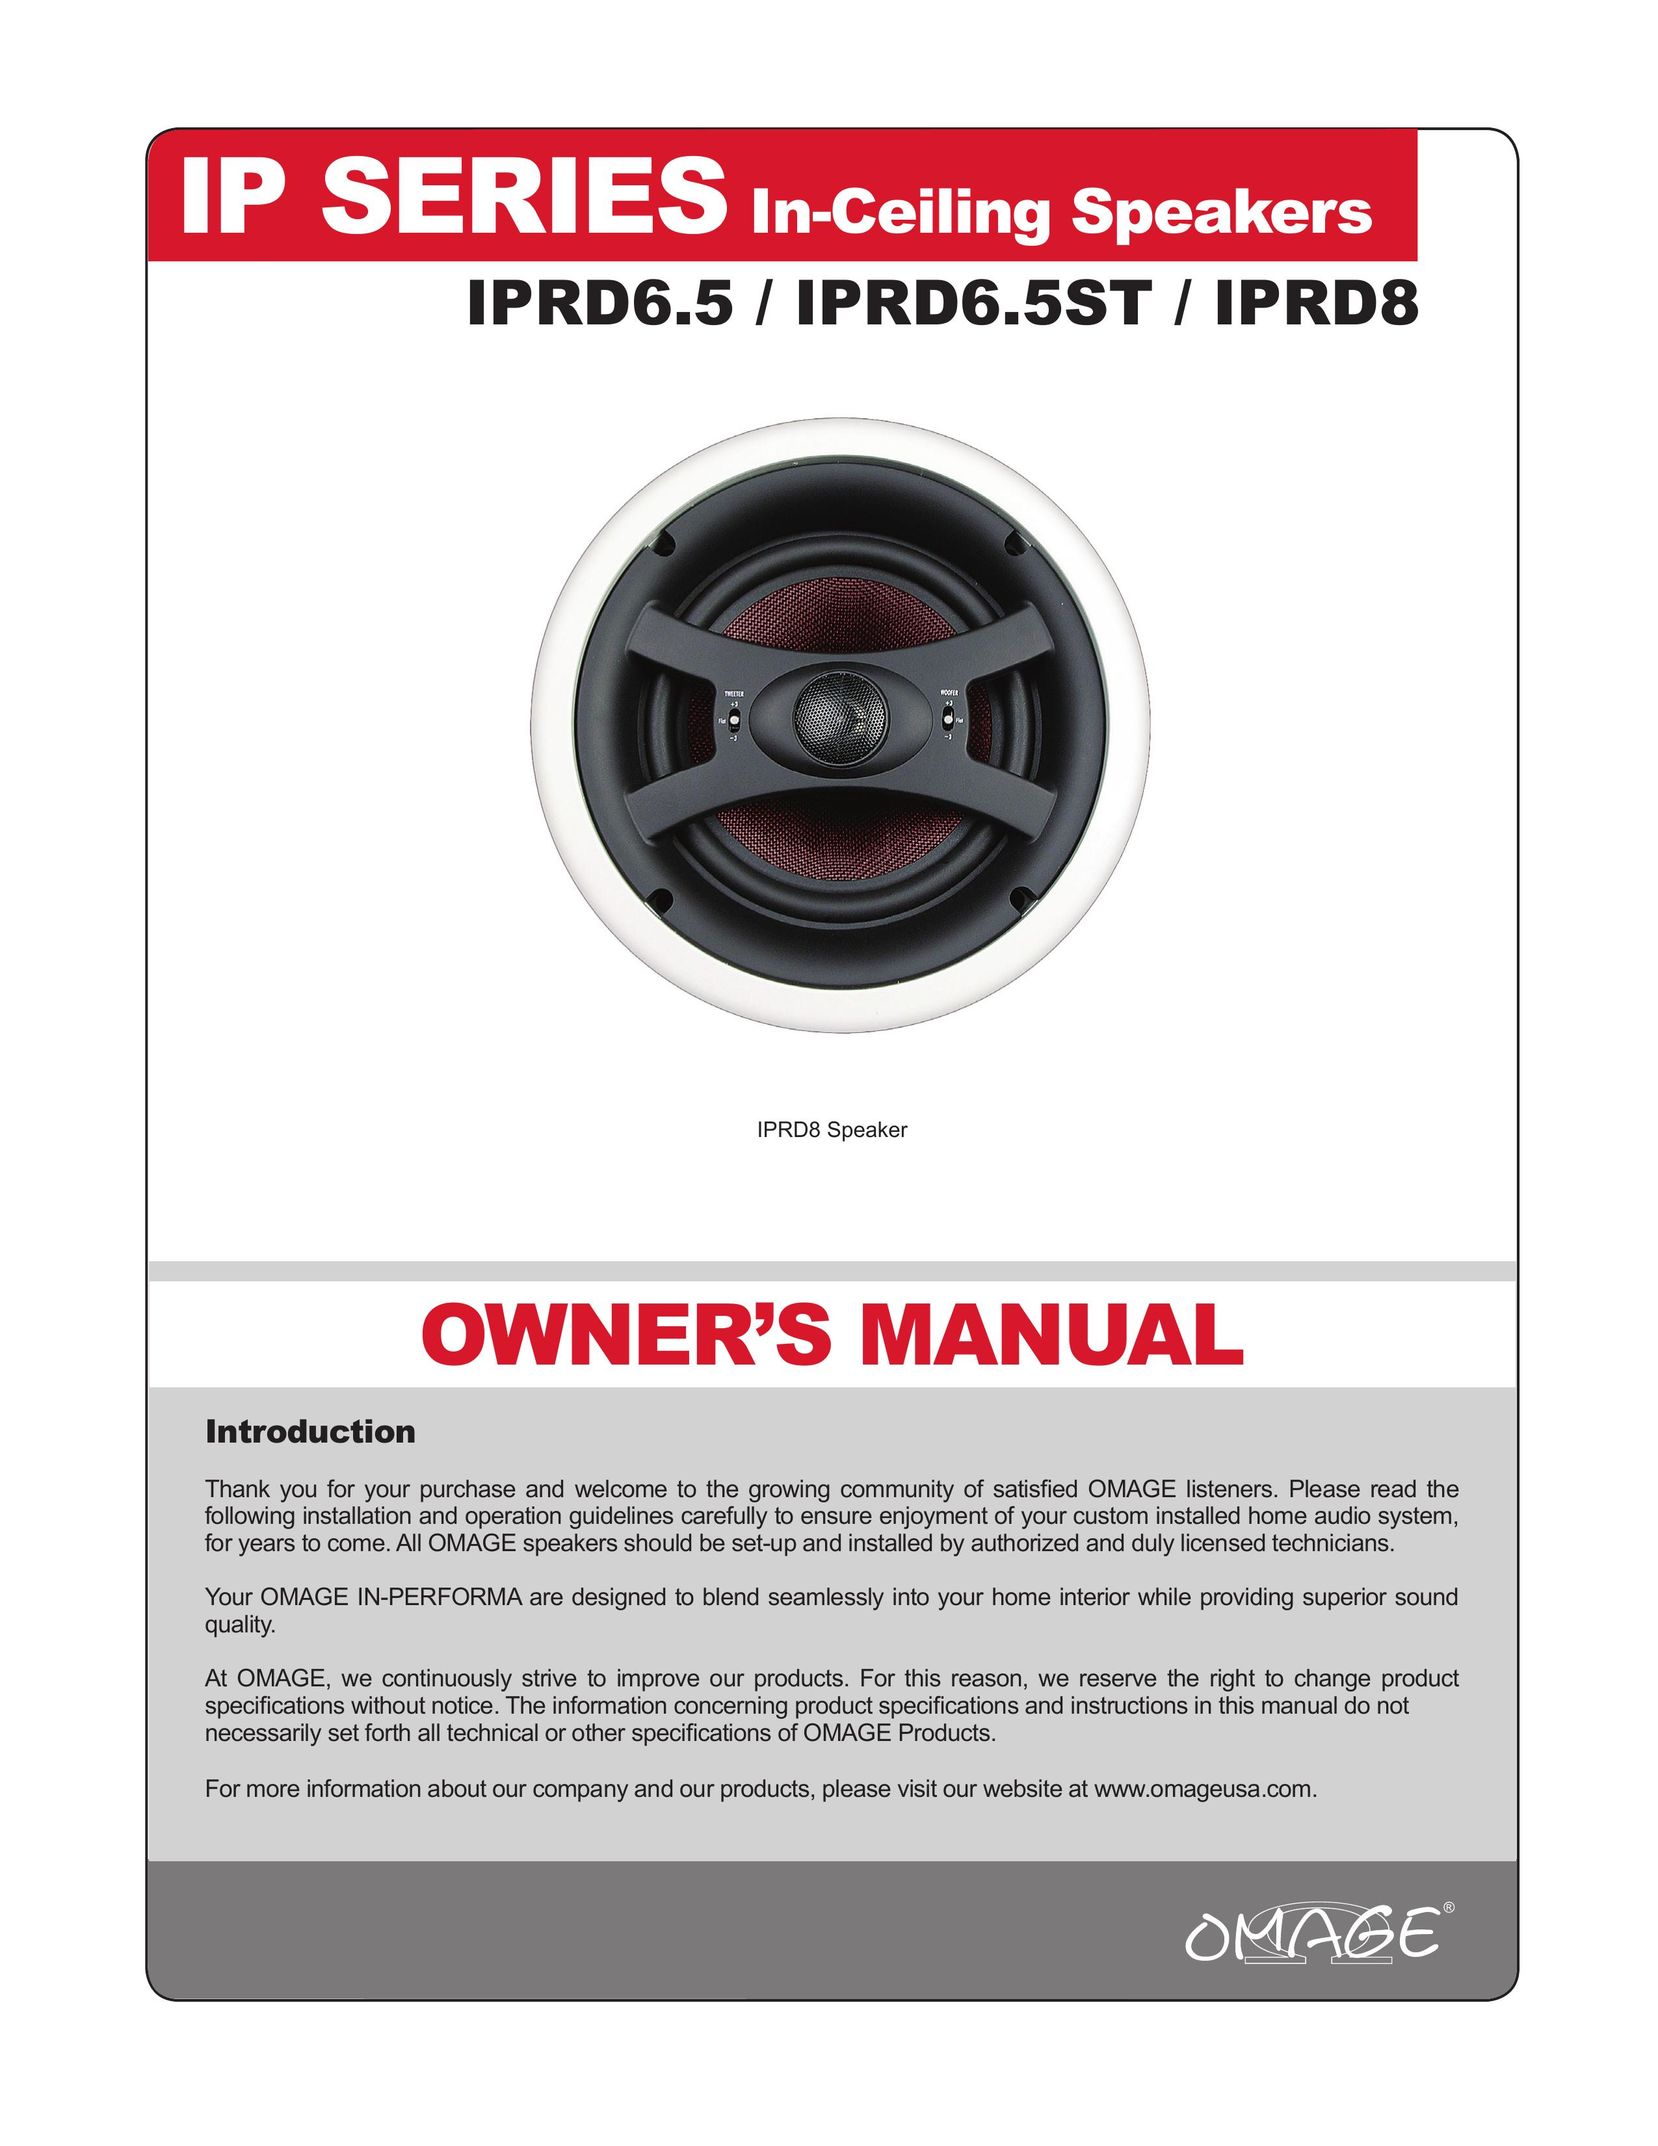 Omage IPRD8 Speaker User Manual